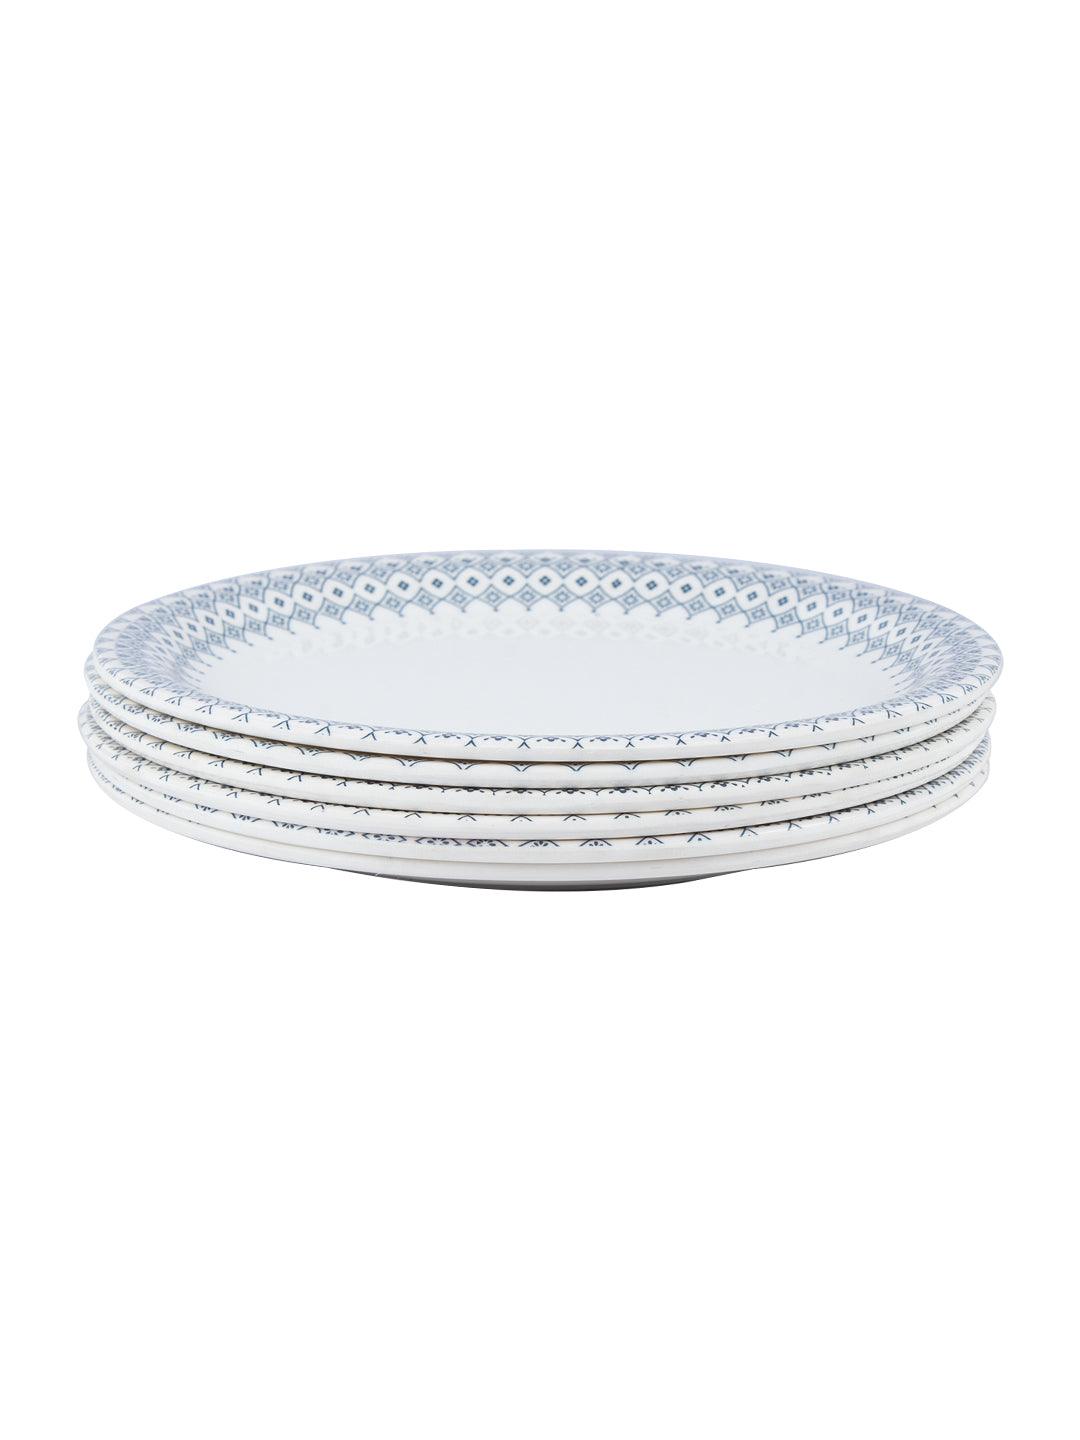 VON CASA Melamine White Round Quarter Plate - Set of 6, White